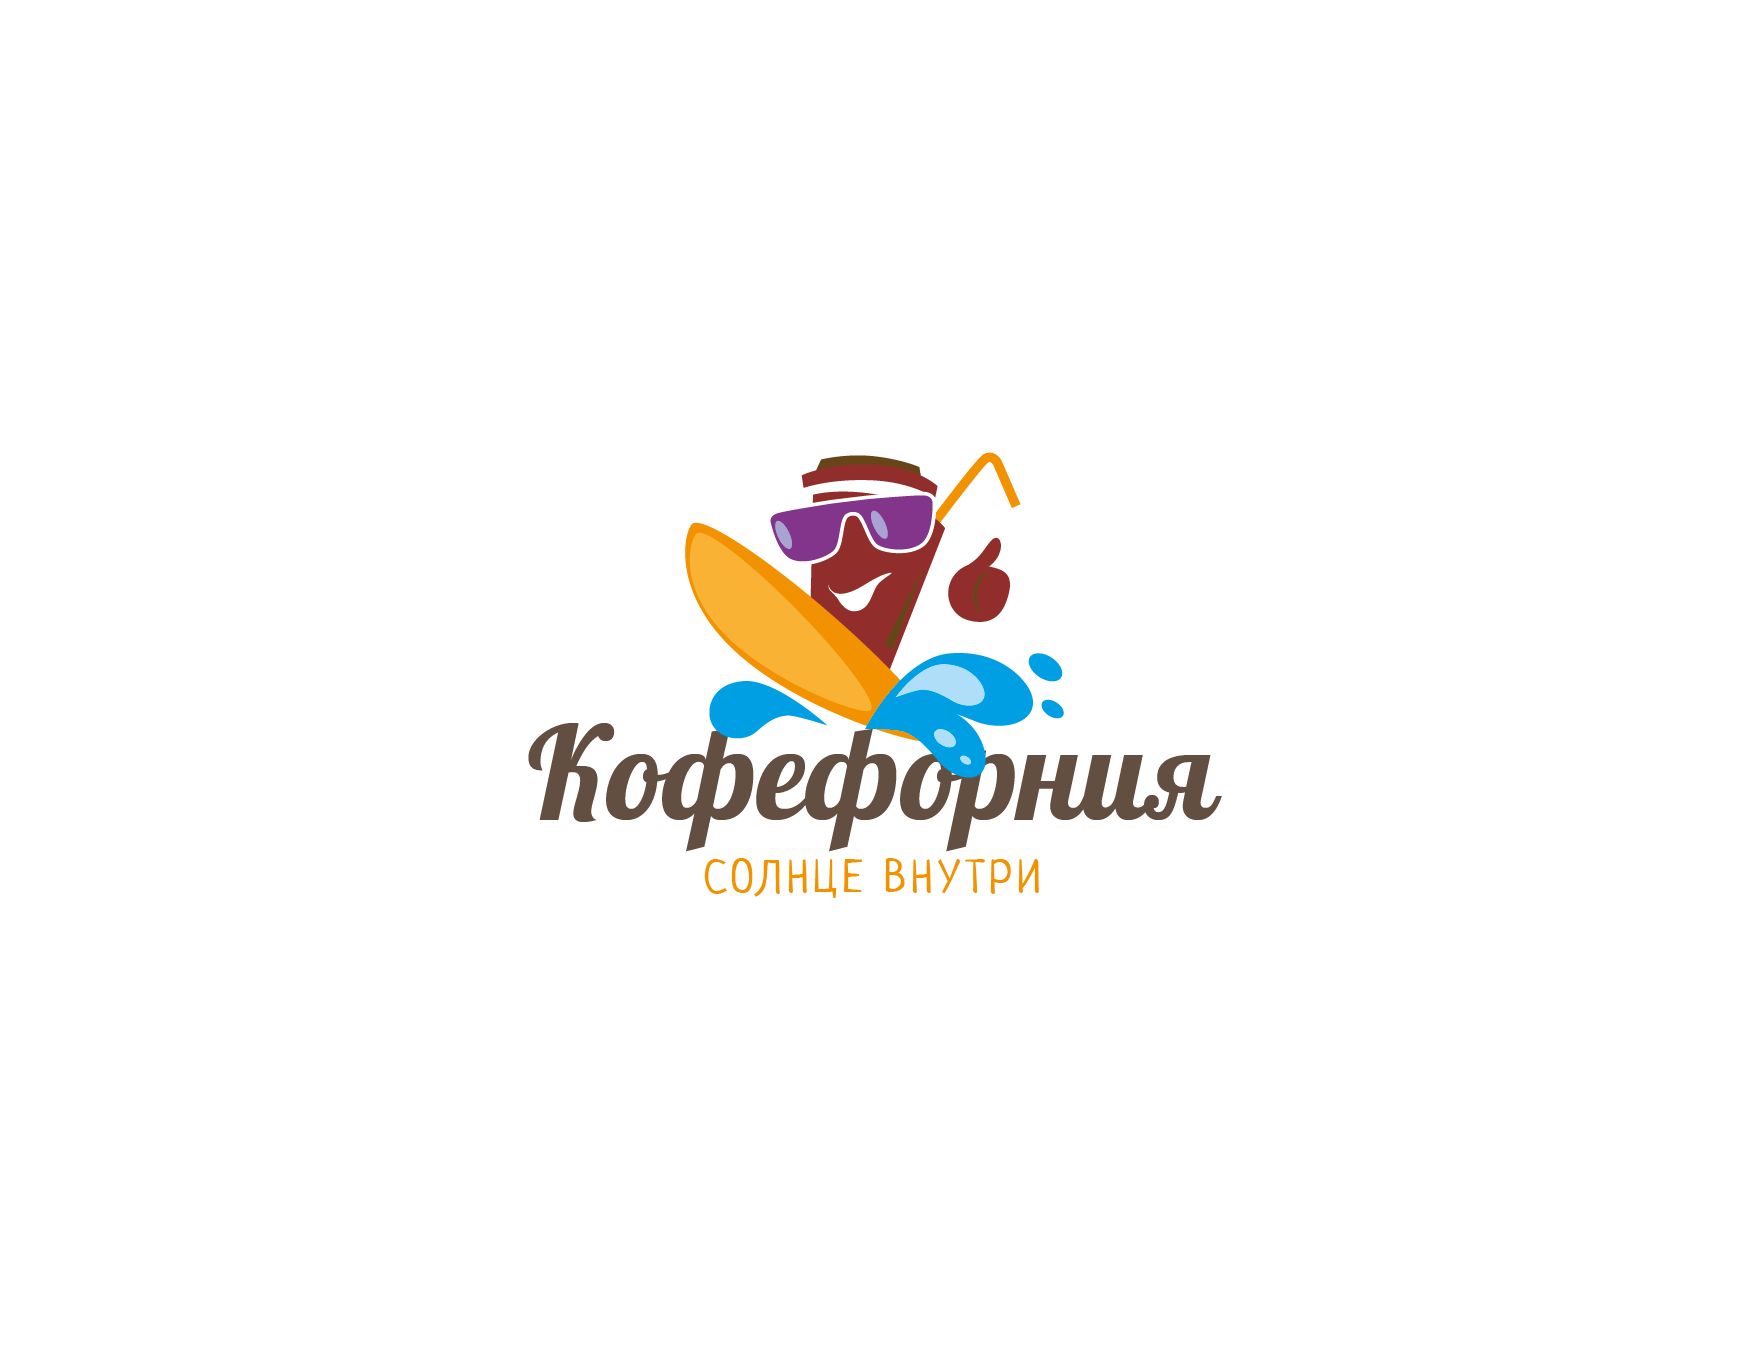 Логотип для BARISTAS - дизайнер kirilln84